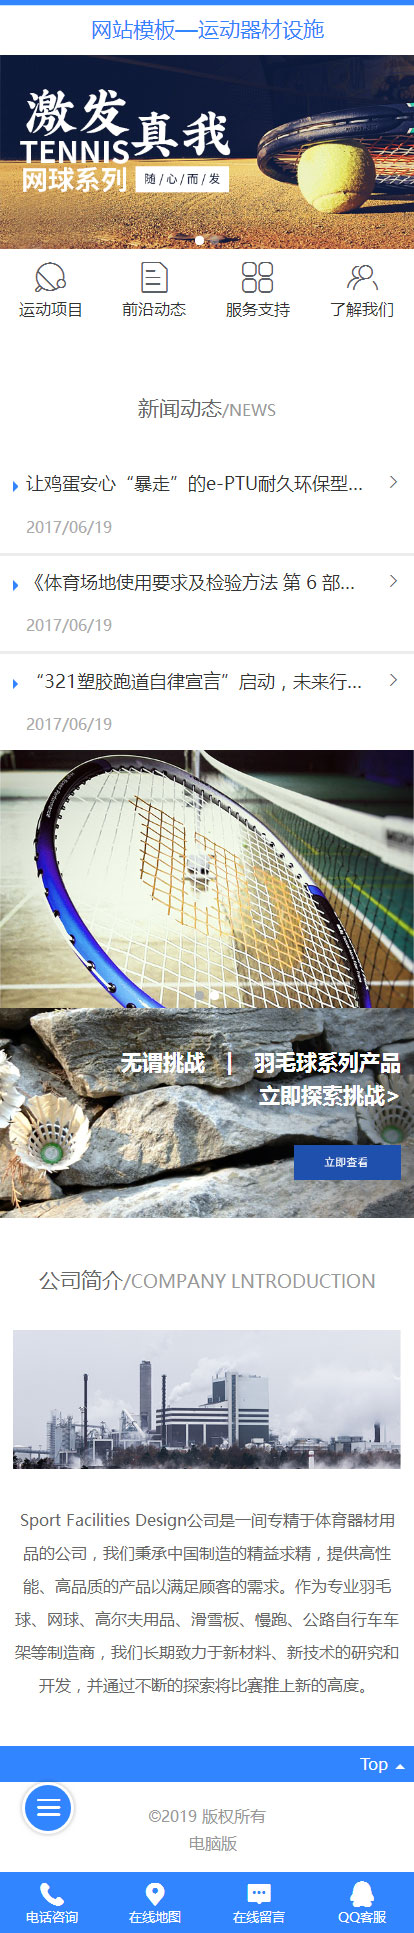 网球、羽毛球运动器材厂家产品展示网站模板